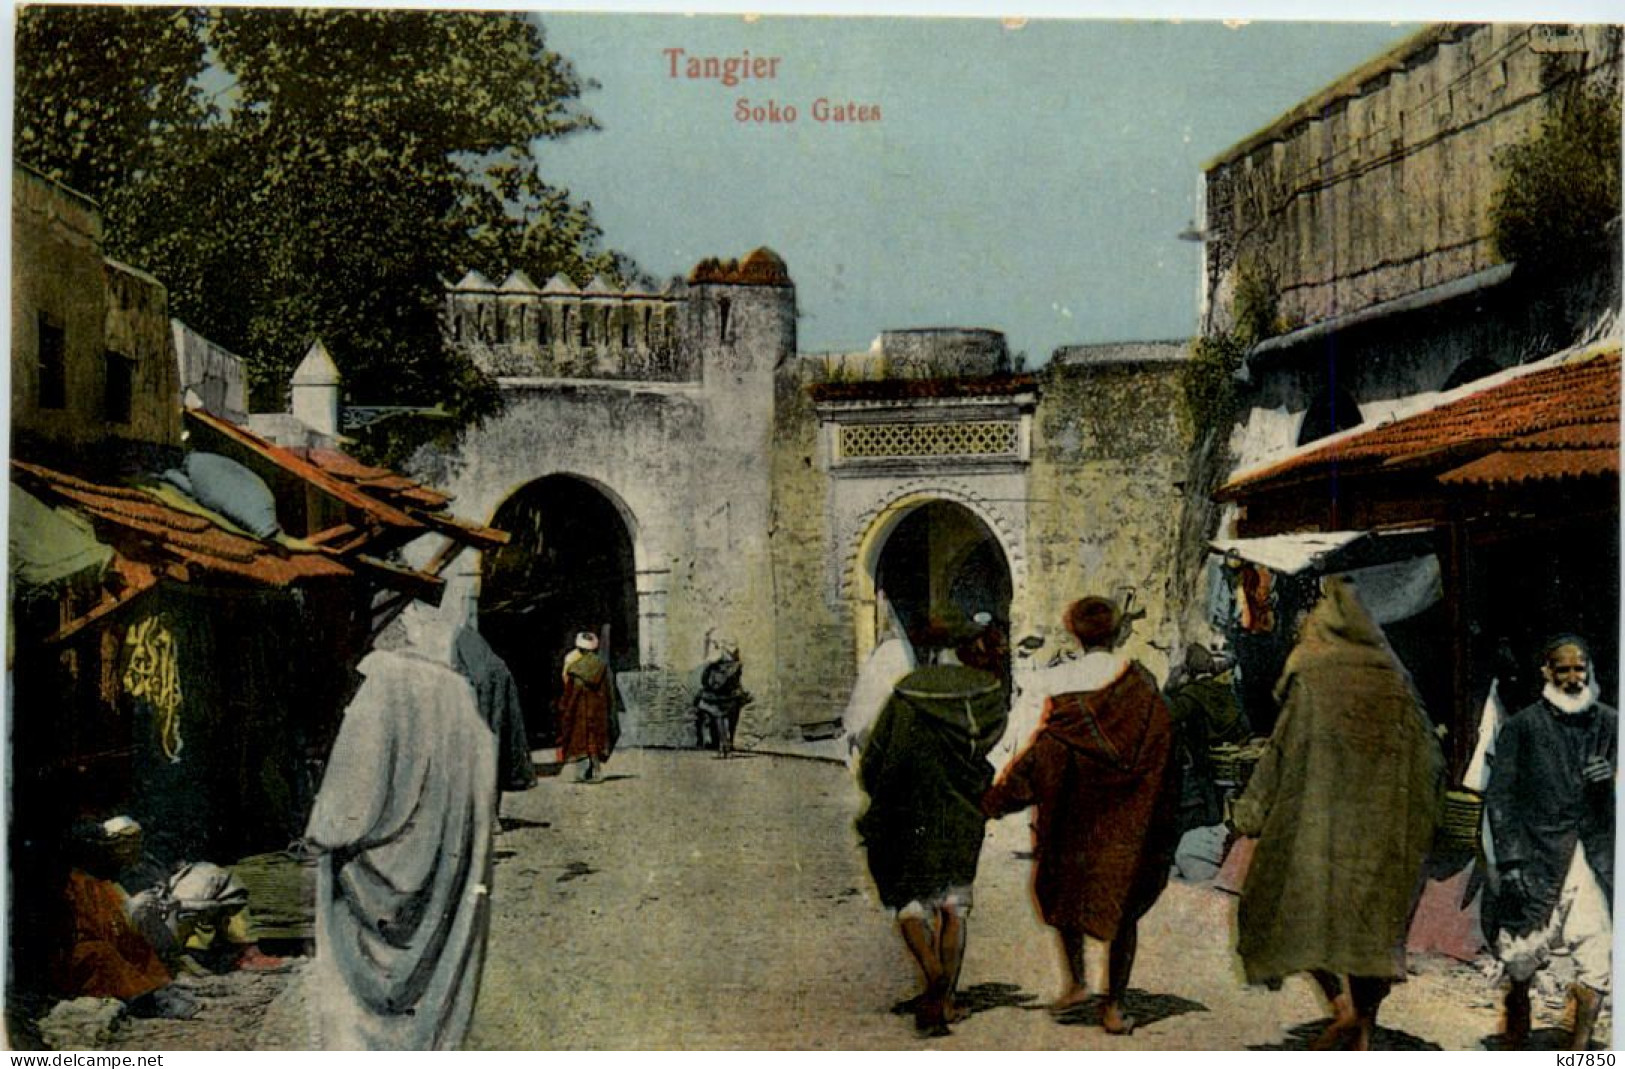 Tangier - Soko Gates - Tanger